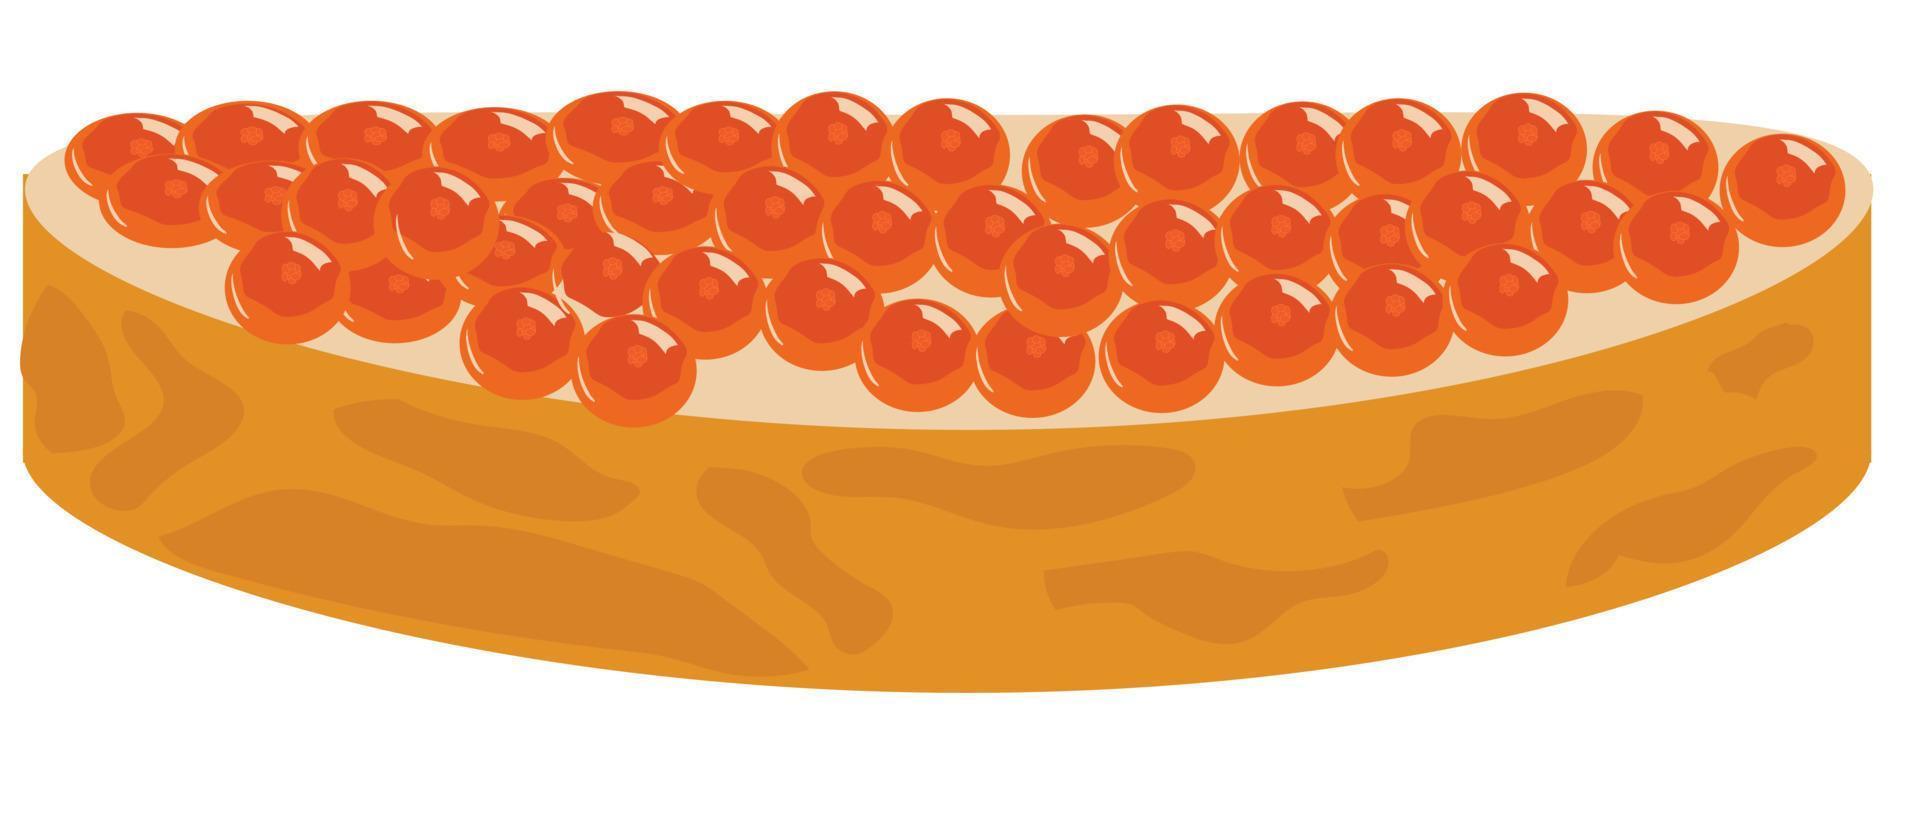 belegd broodje met rood kaviaar. vector illustratie.